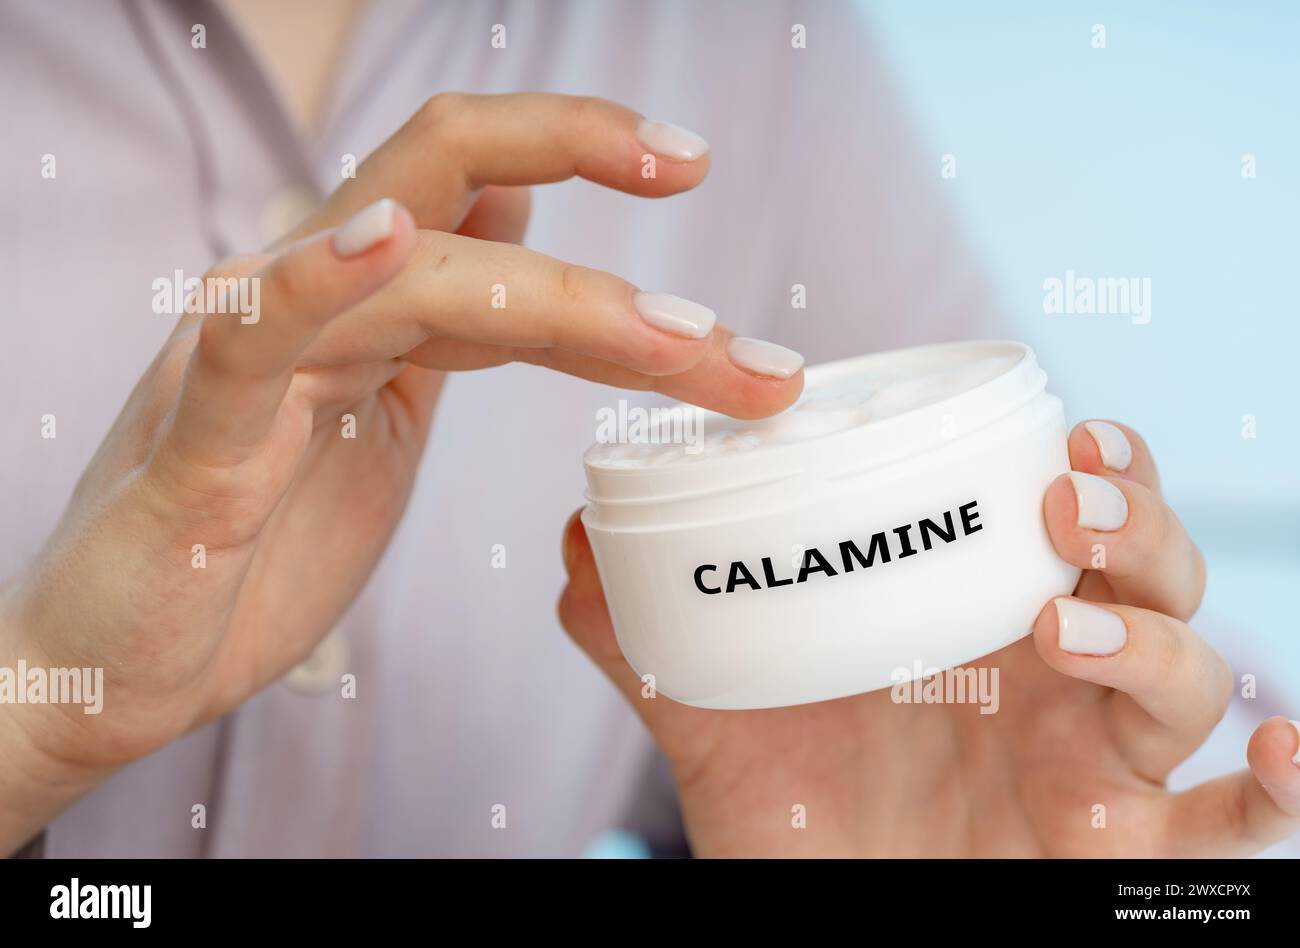 Calamin-medizinische Creme, konzeptuelles Bild. Eine wohltuende Creme, die Juckreiz, Irritationen und kleinere Hauterkrankungen wie Giftefeuu, Insektenstiche und Sonnenbrand lindert. Stockfoto